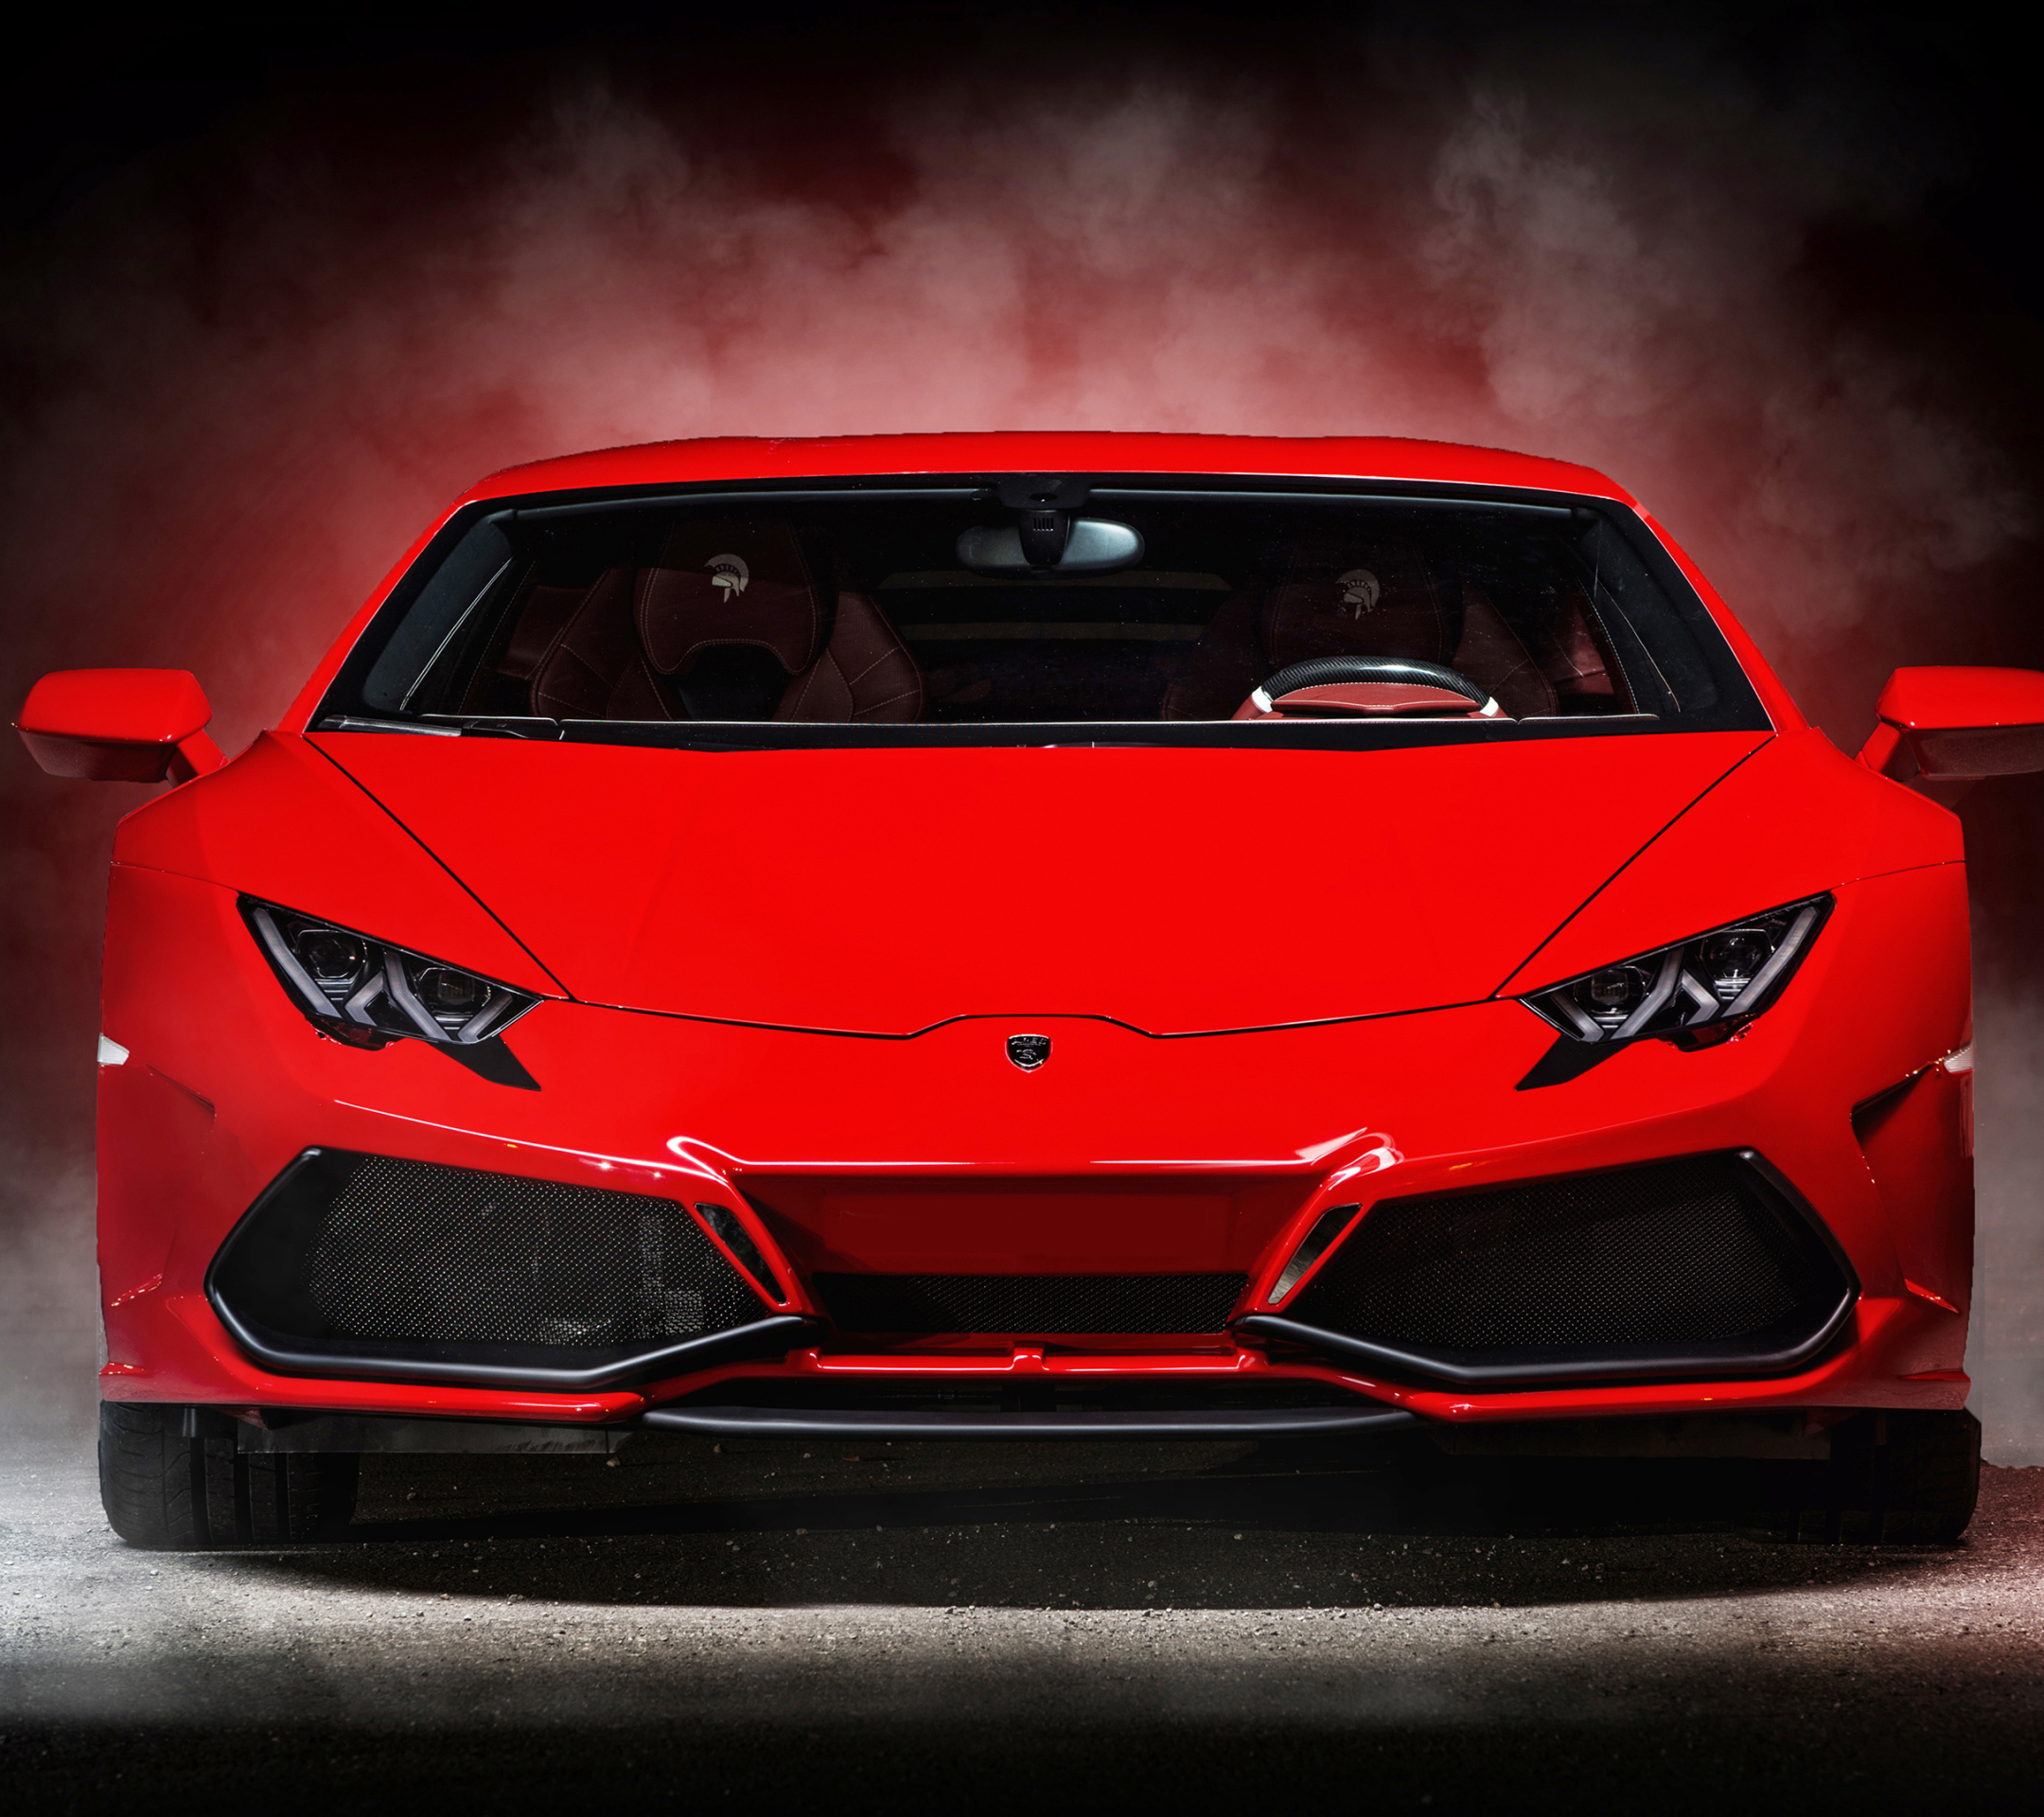 Free download wallpaper Lamborghini, Vehicles, Lamborghini Huracán on your PC desktop